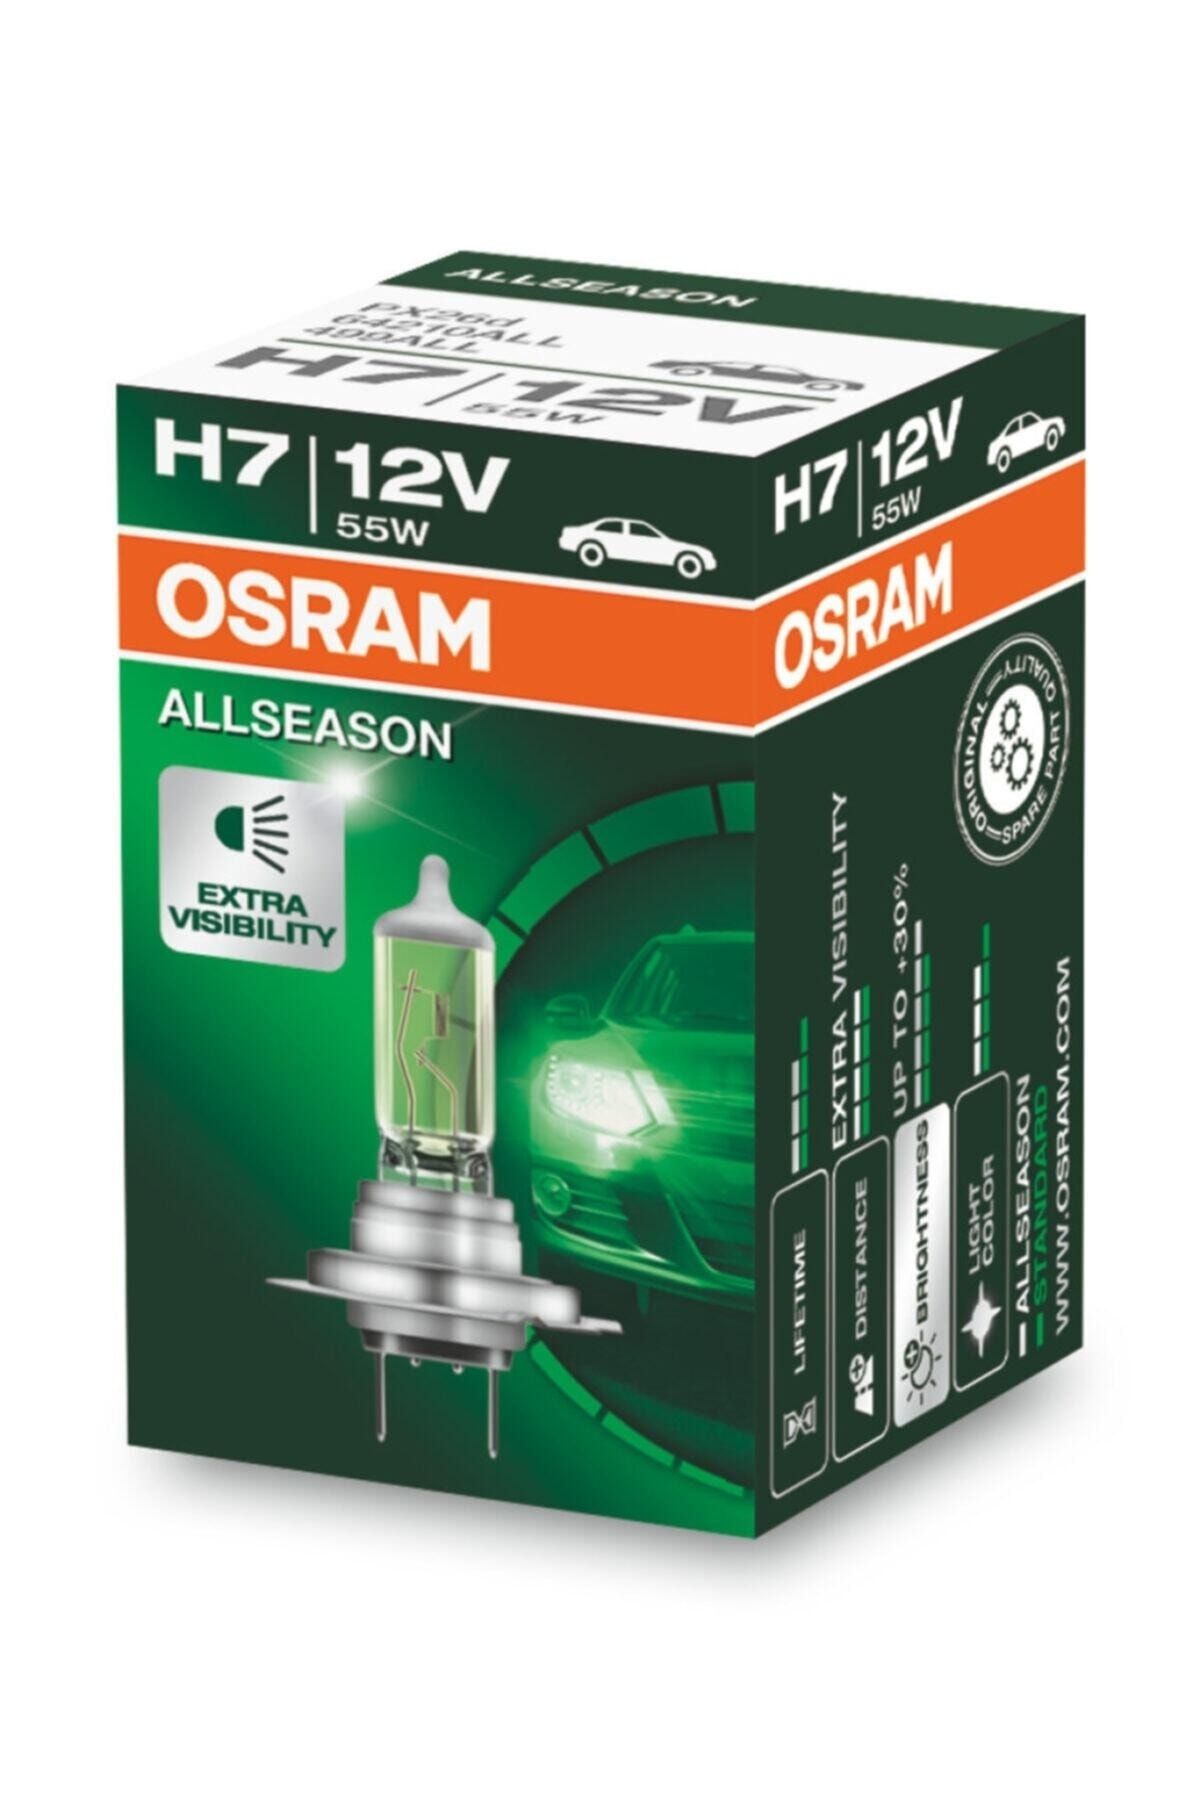 Osram Allseason H7 Ampul 2 Adet Takım (kolormatik) Fiyatı, Yorumları .